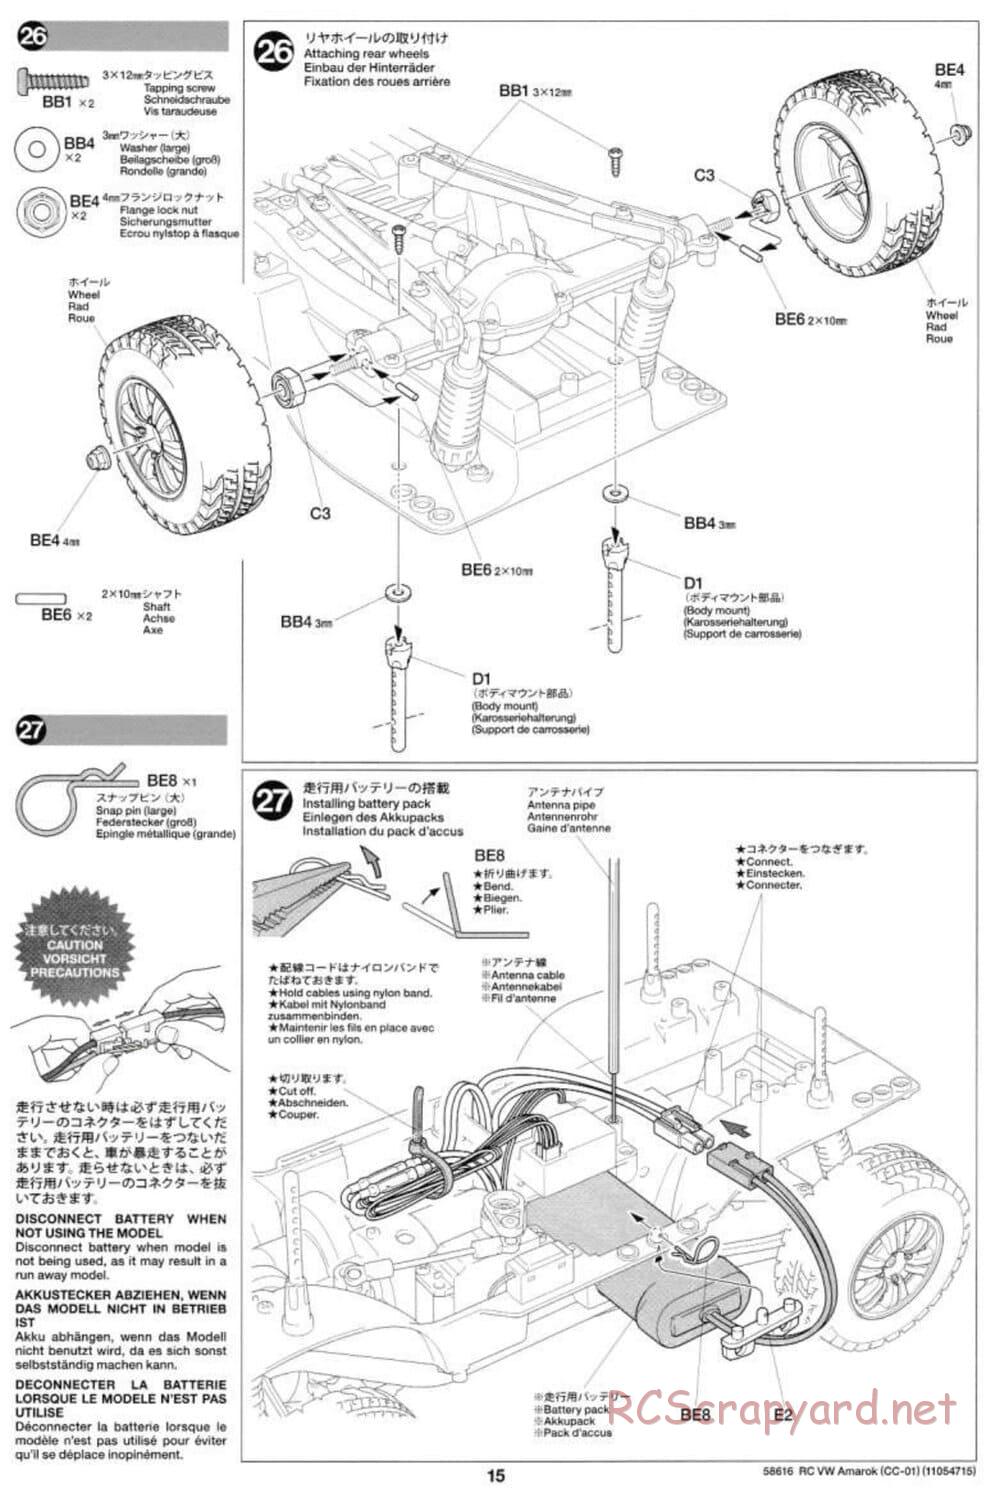 Tamiya - Volkswagen Amarok - CC-01 Chassis - Manual - Page 15